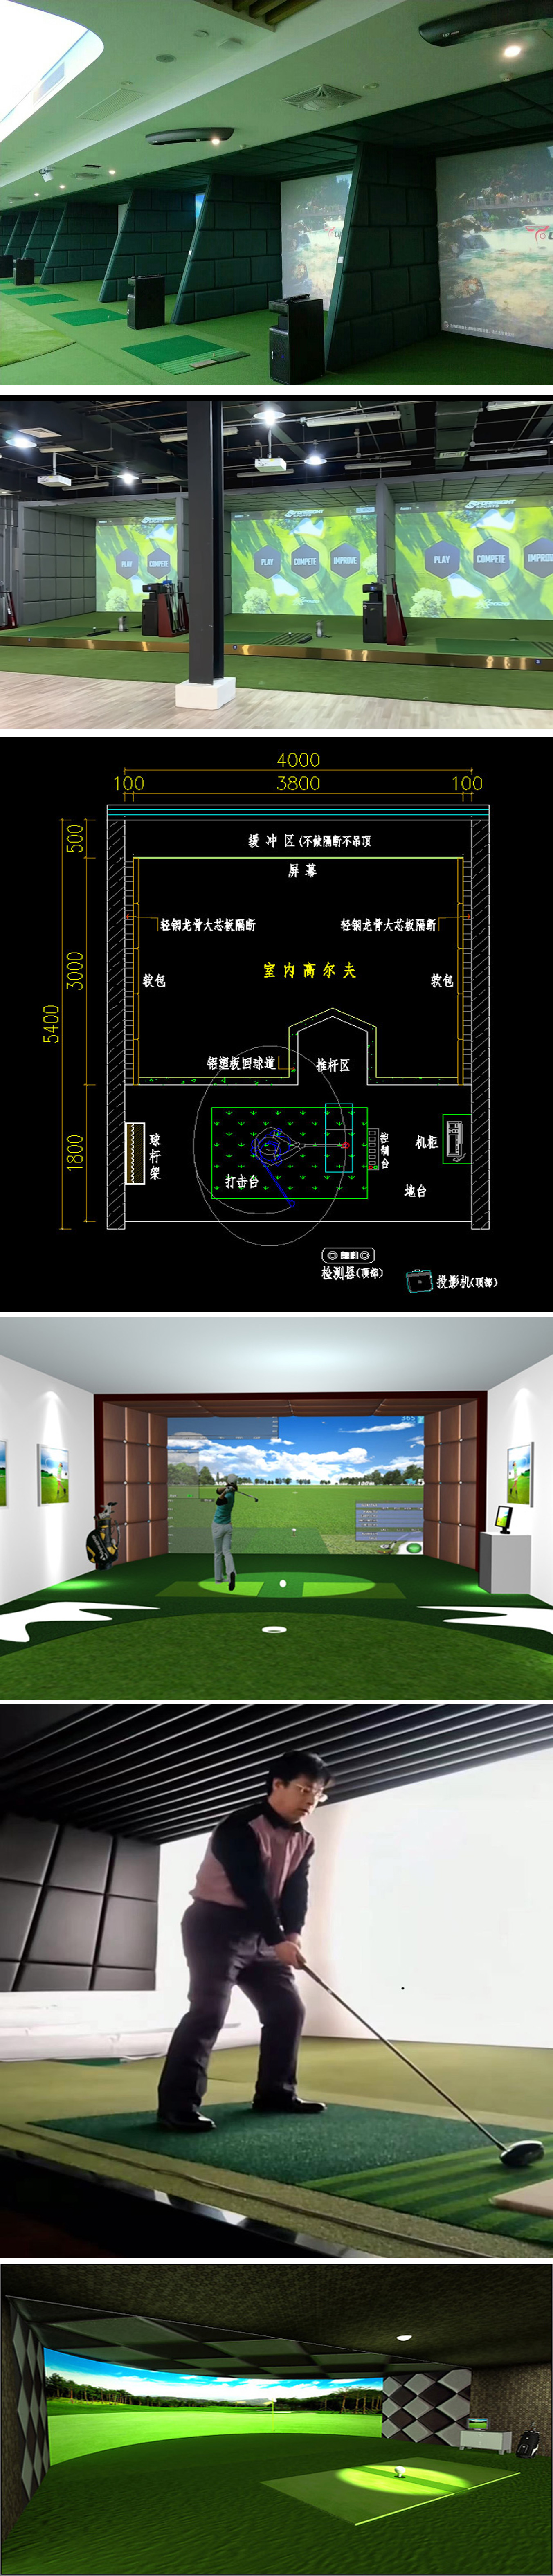 模拟高尔夫设备球场 二.jpg